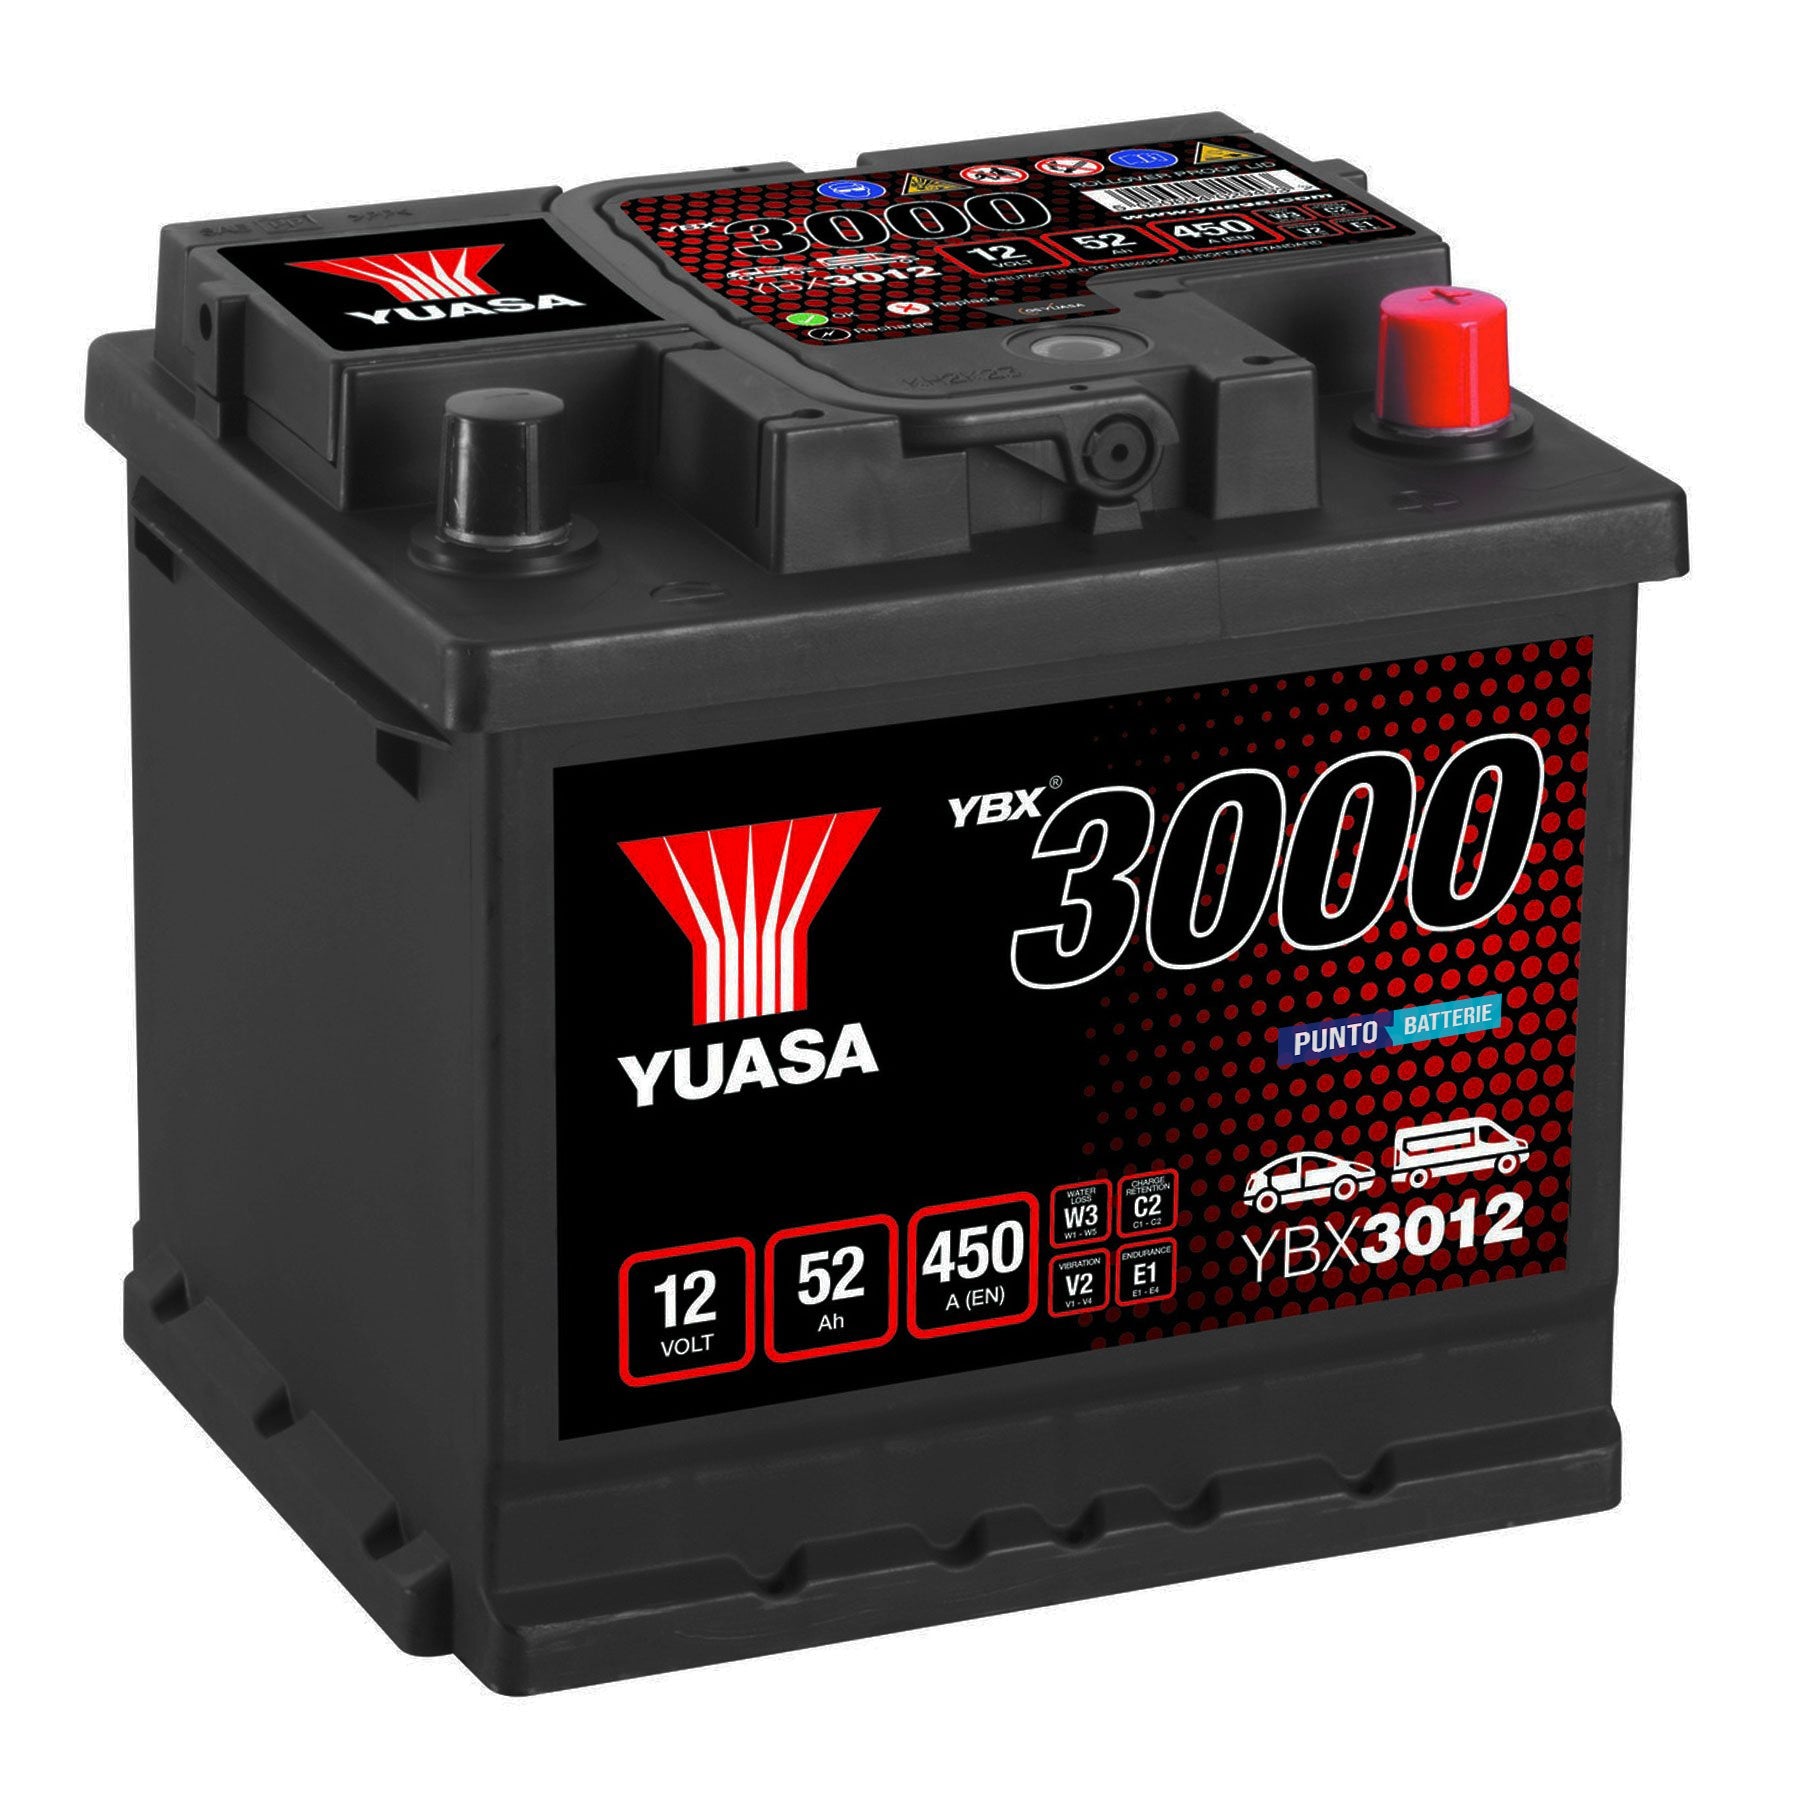 Batteria originale Yuasa YBX3000 YBX3012, dimensioni 207 x 175 x 190, polo positivo a destra, 12 volt, 52 amperora, 450 ampere. Batteria per auto e veicoli leggeri.